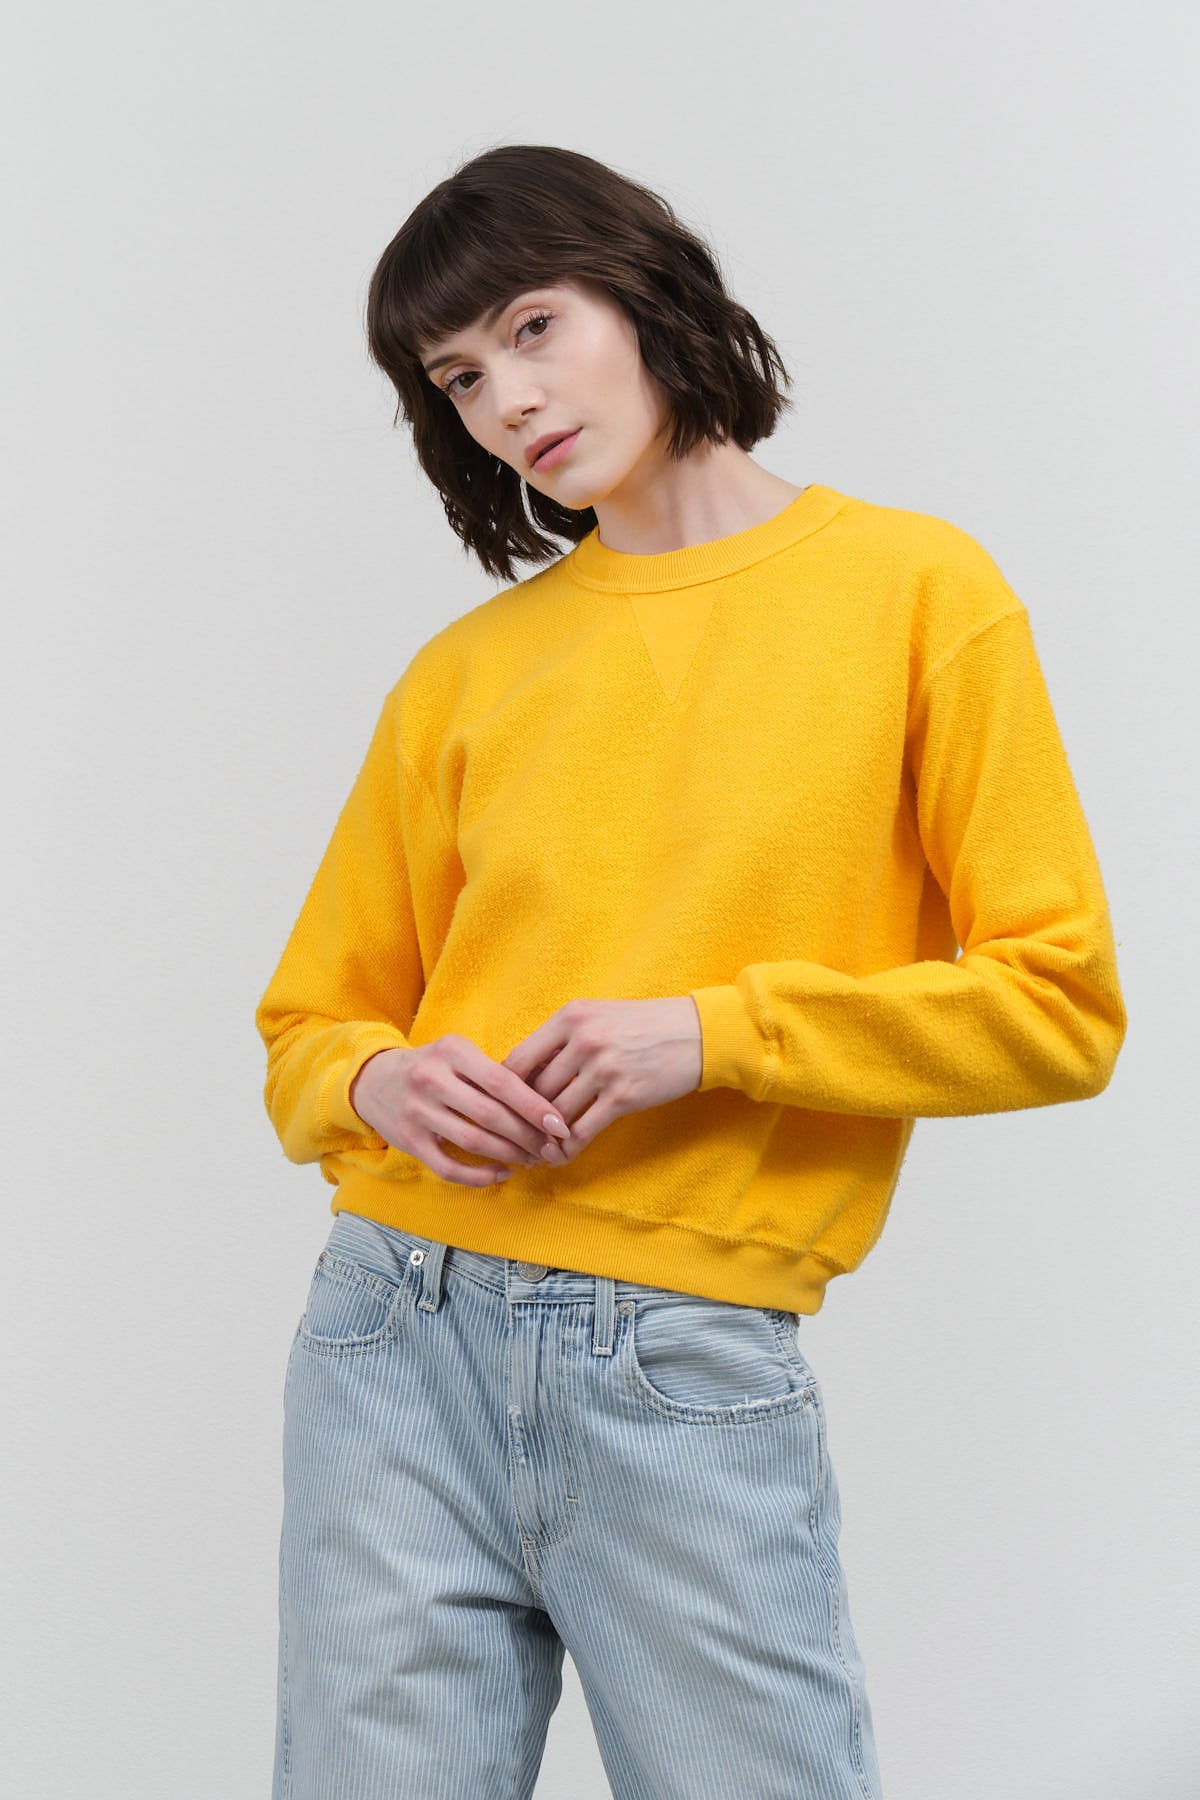 Hina Sweatshirt in Citrus